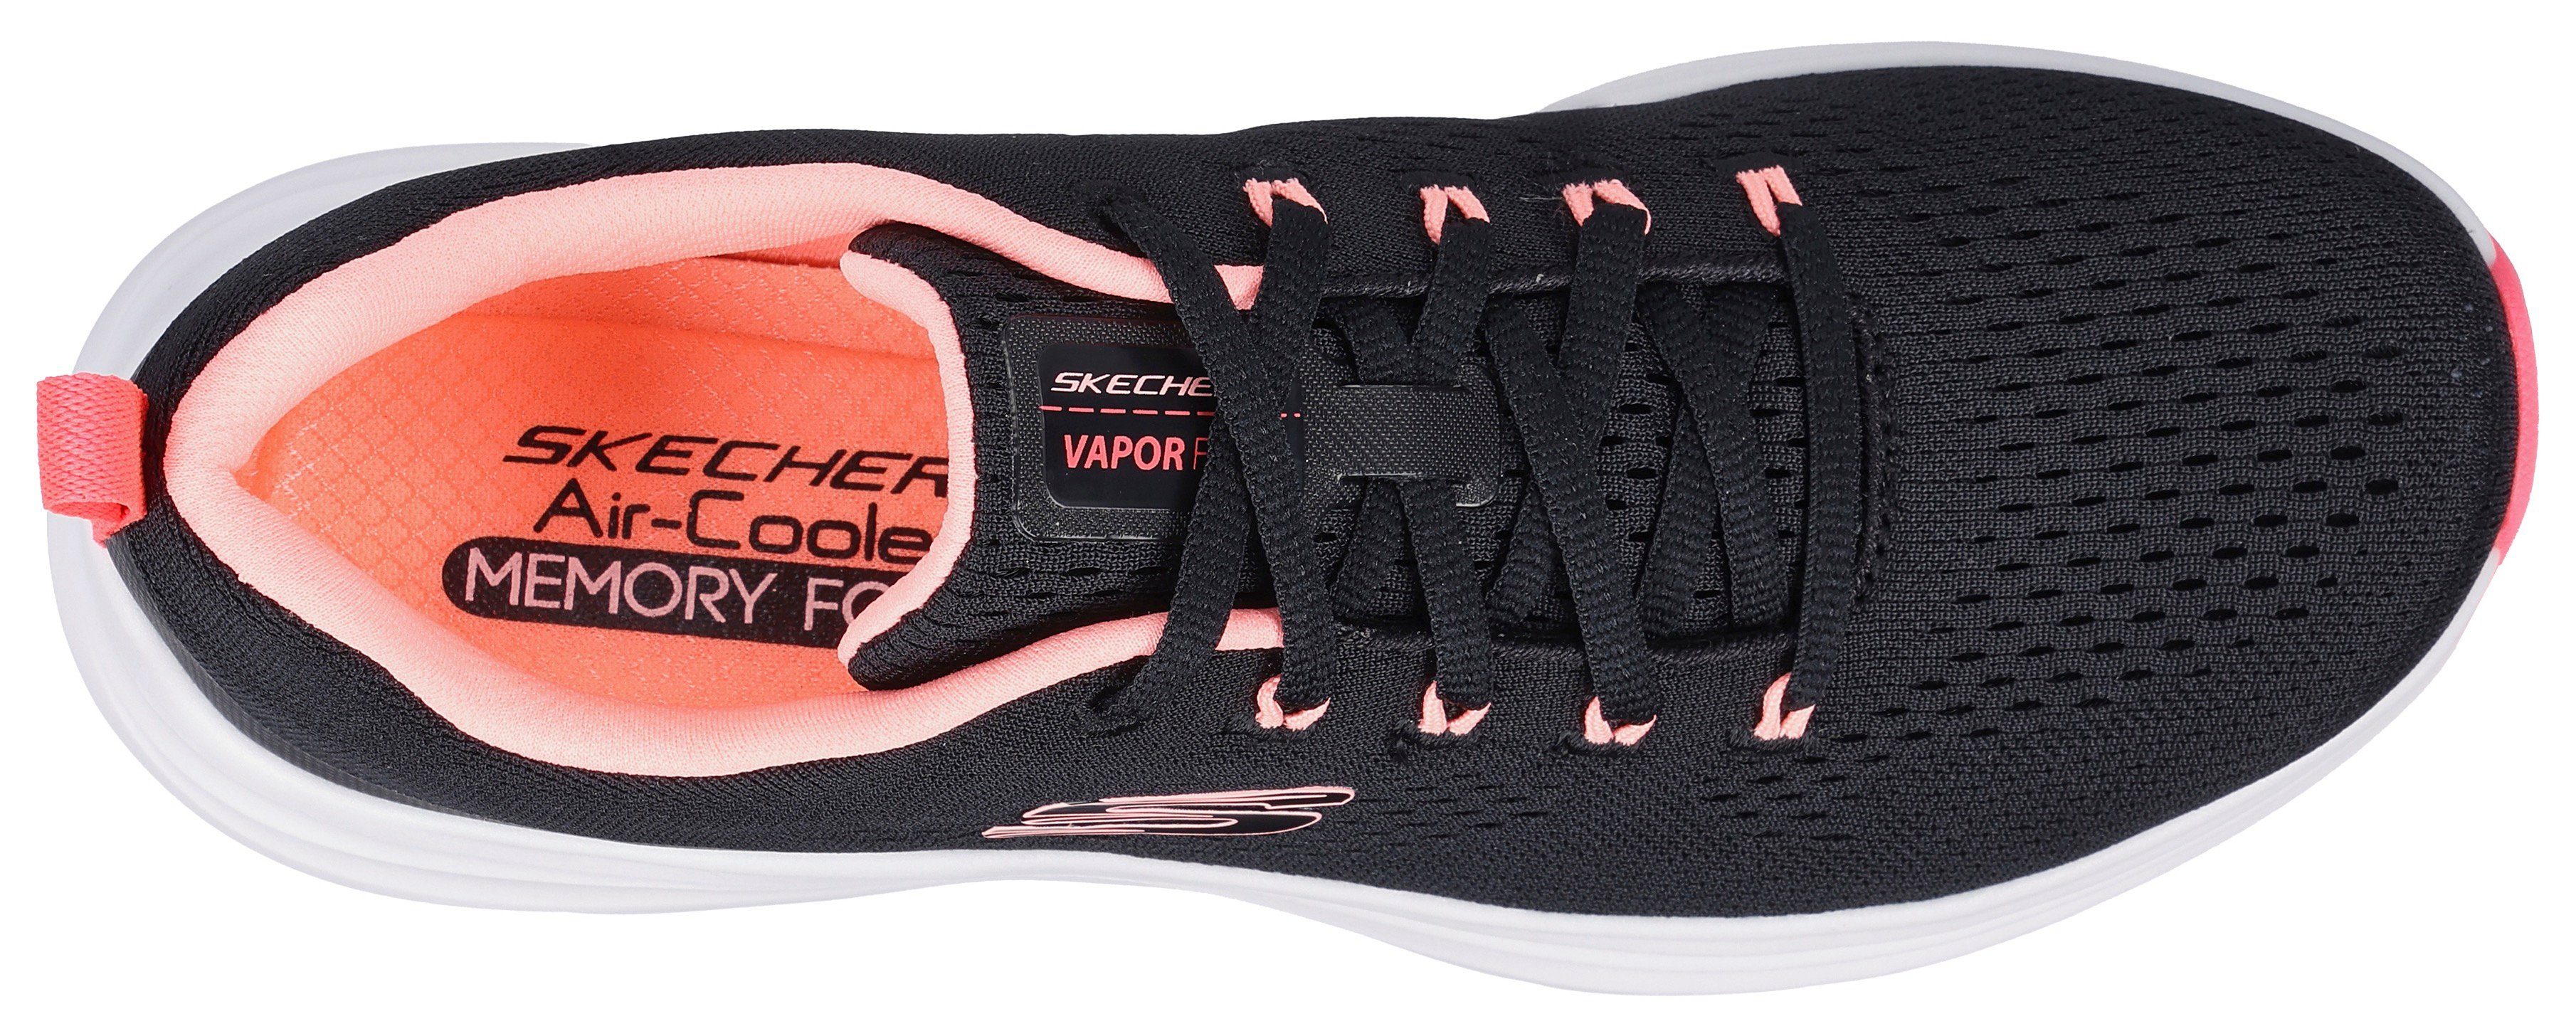 schwarz-kombiniert Kontrastdetails Sneaker VAPOR FOAM- mit dezenten Skechers